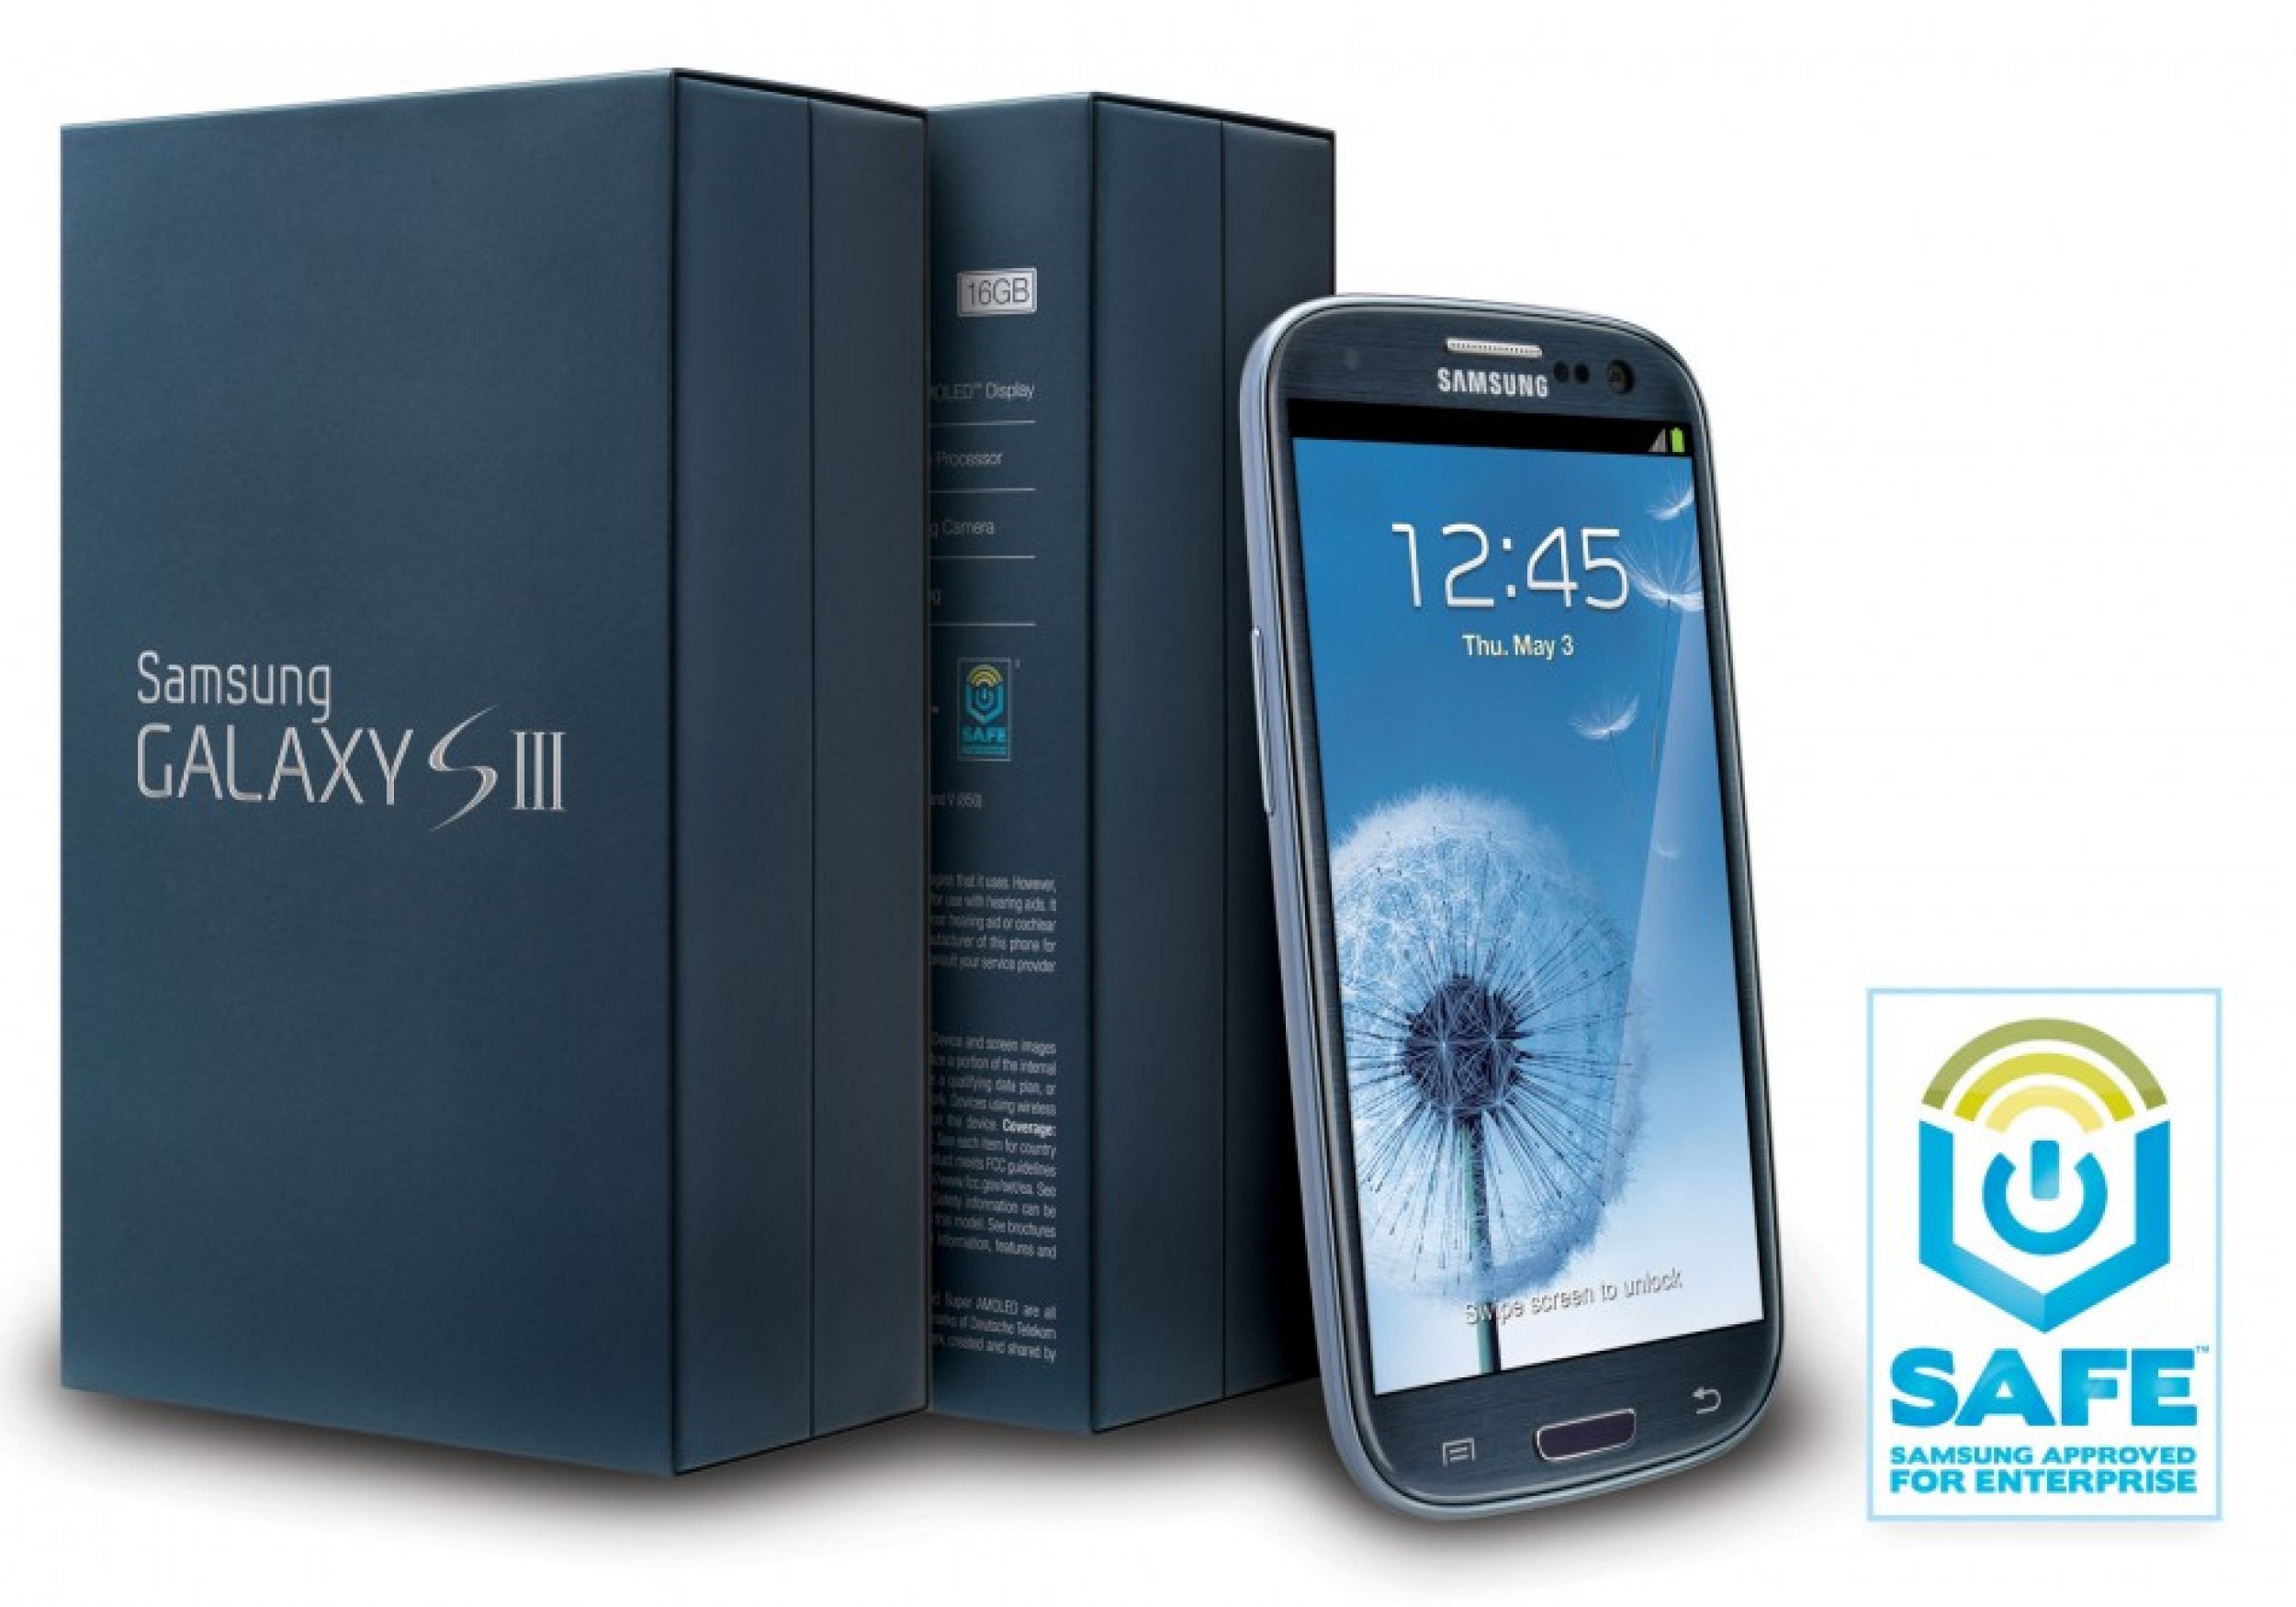 Samsung con soporte SAFE, el Galaxy SIII al mundo empresarial